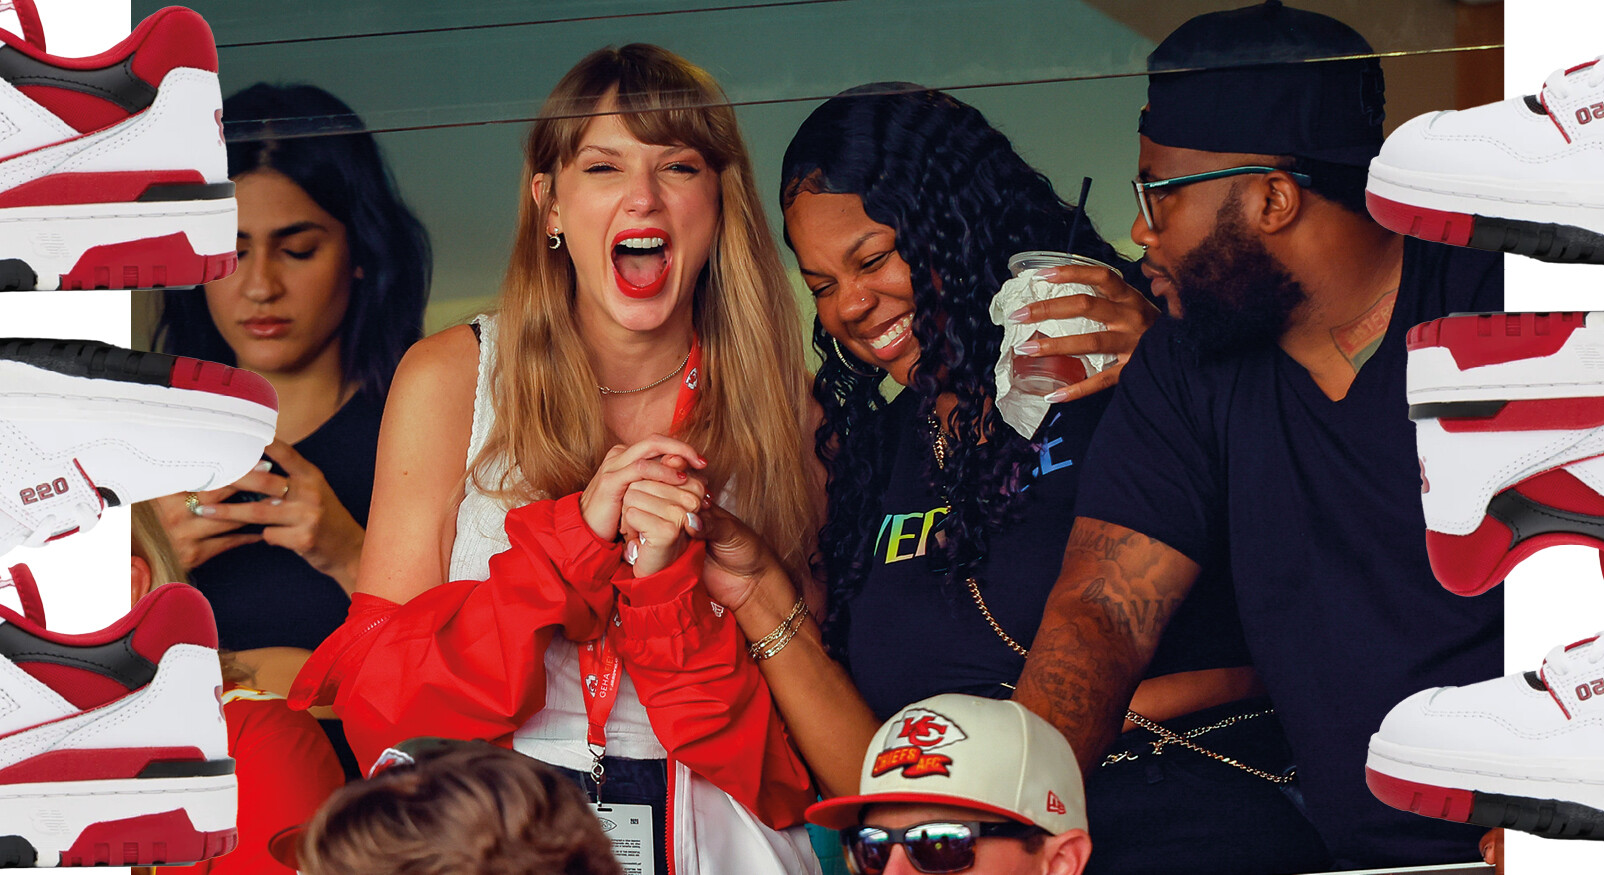 Taylor swift in publiek van wedstrijd lachend met vrienden rood een wit gekleed